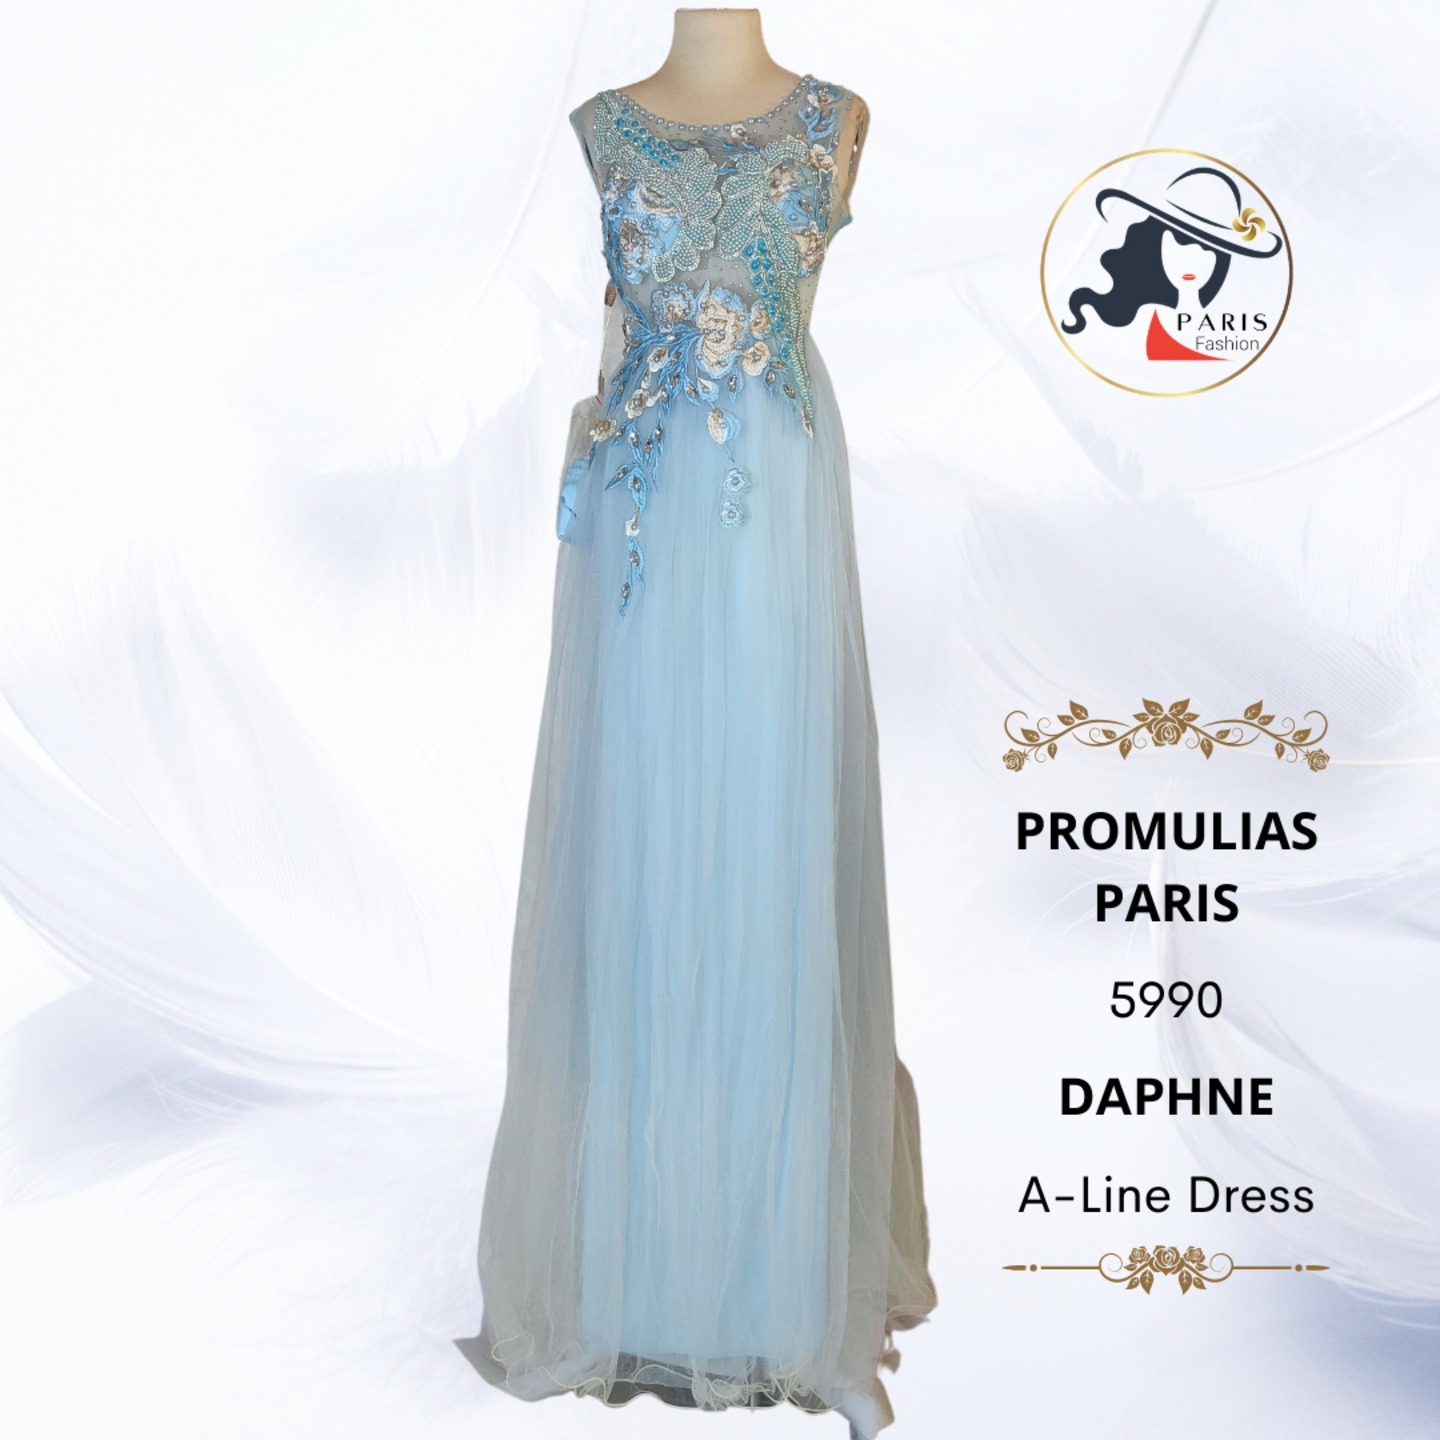 PROMULIAS PARIS  5990  DAPHNE  A-LINE DRESS